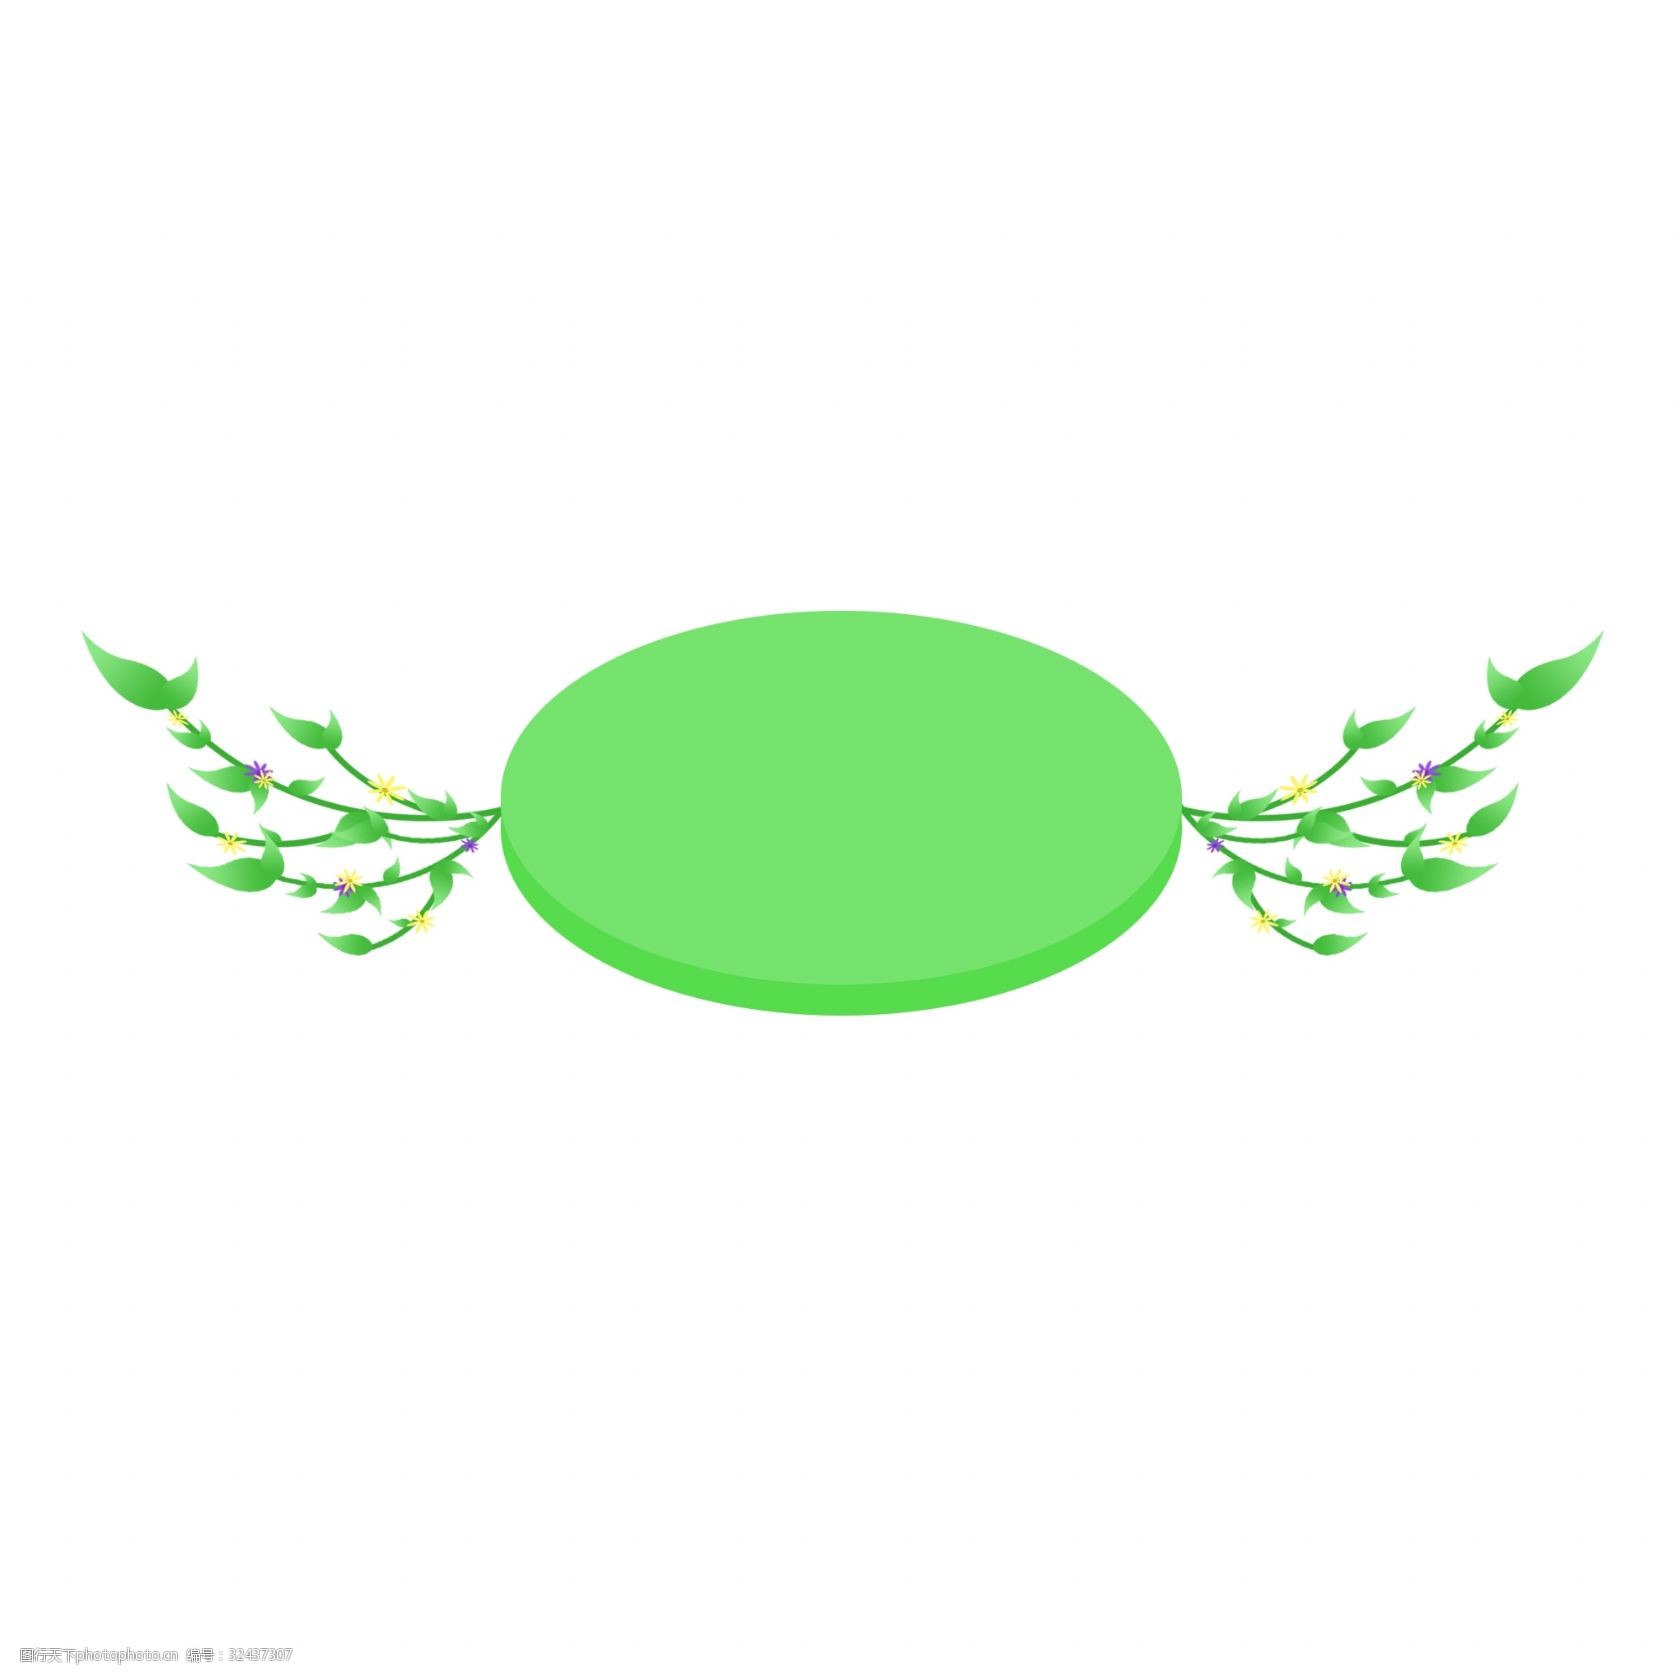 关键词:椭圆浮动边框插画 椭圆边框 绿色的边框 植物边框 飘落的边框